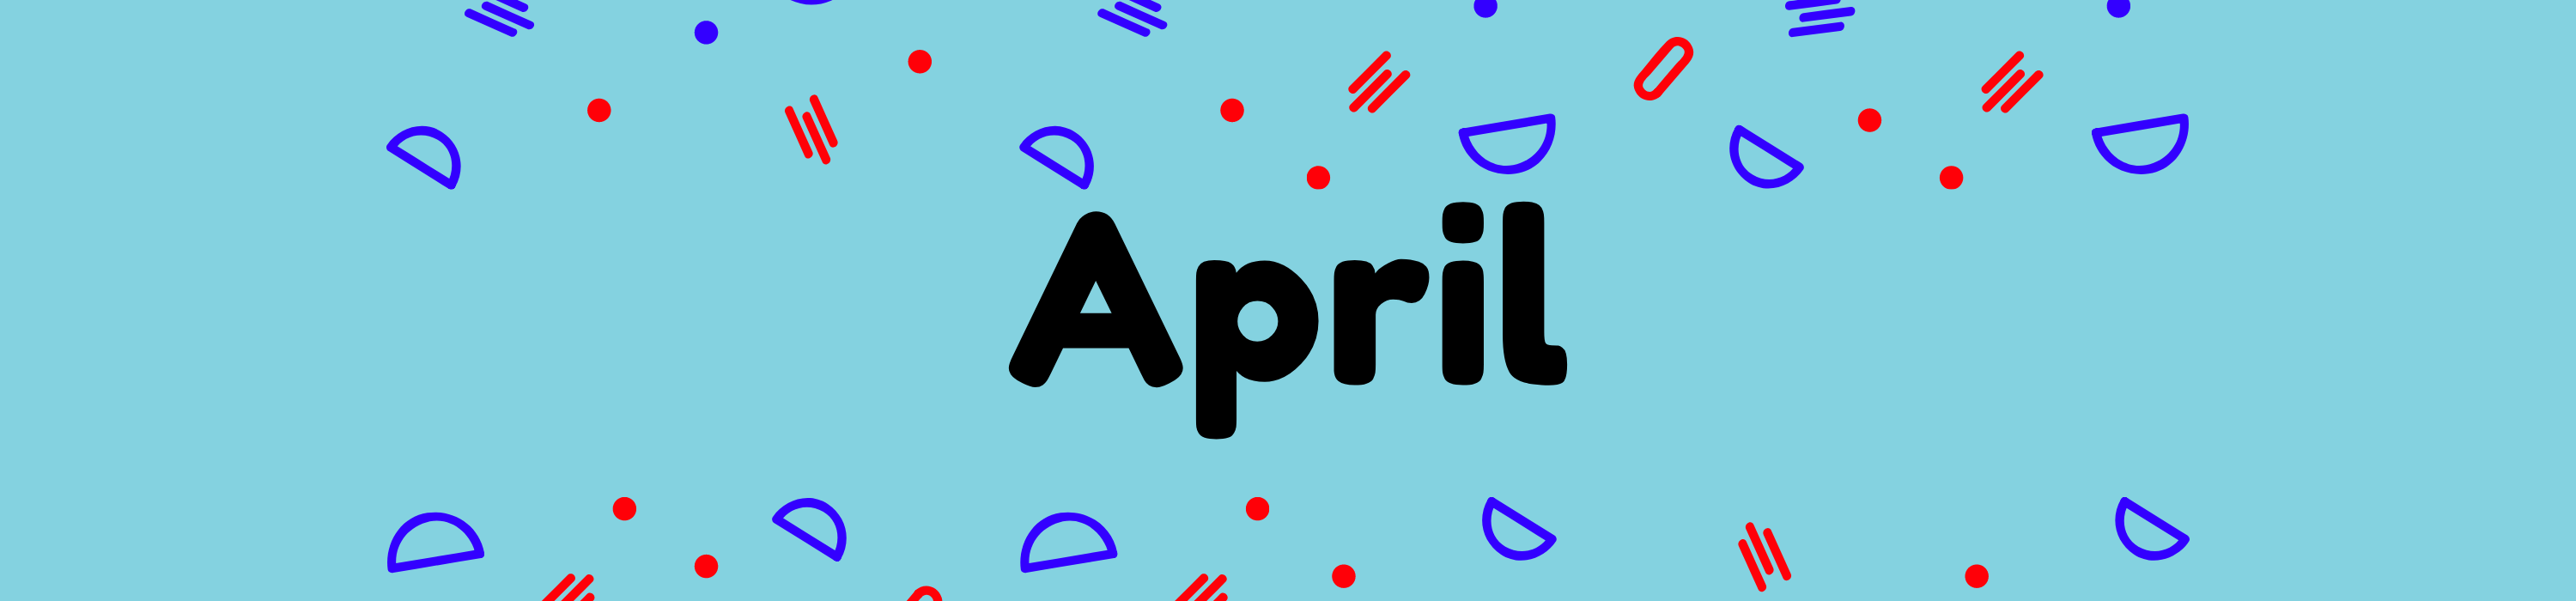 April-banner